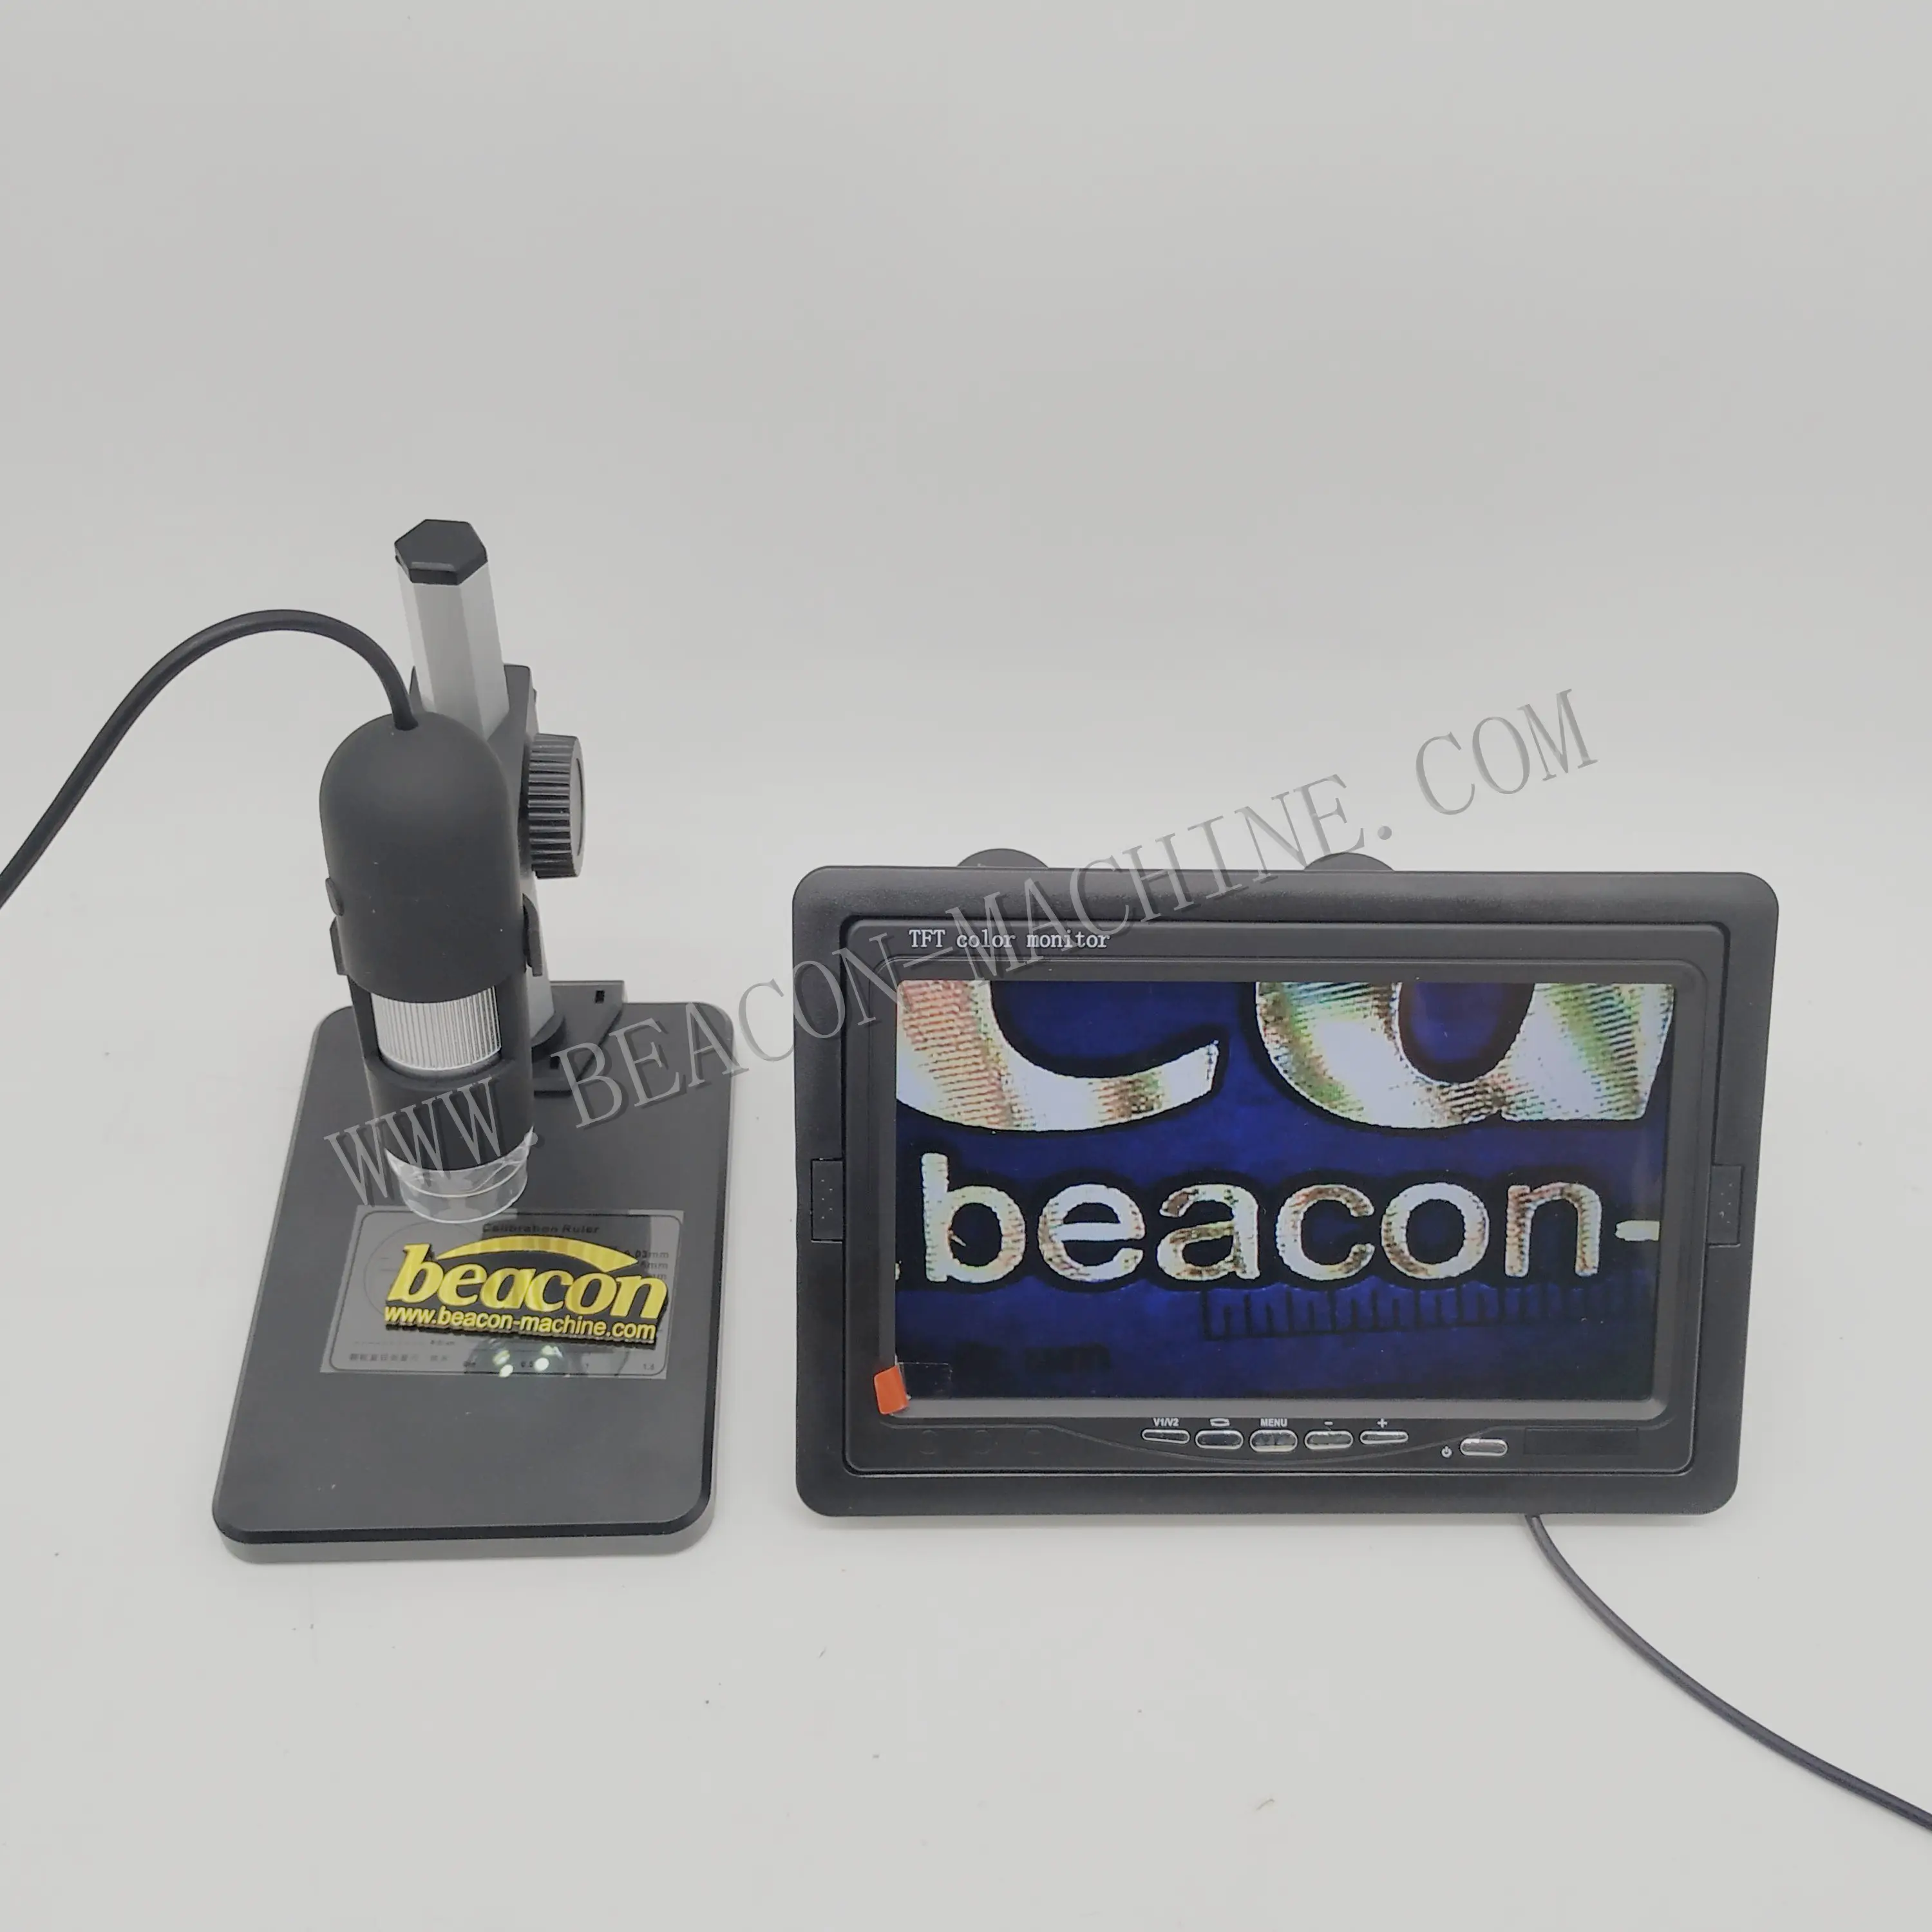 BEACON เครื่องมือดีเซลกล้องจุลทรรศน์ดิจิตอลอิเล็กทรอนิกส์